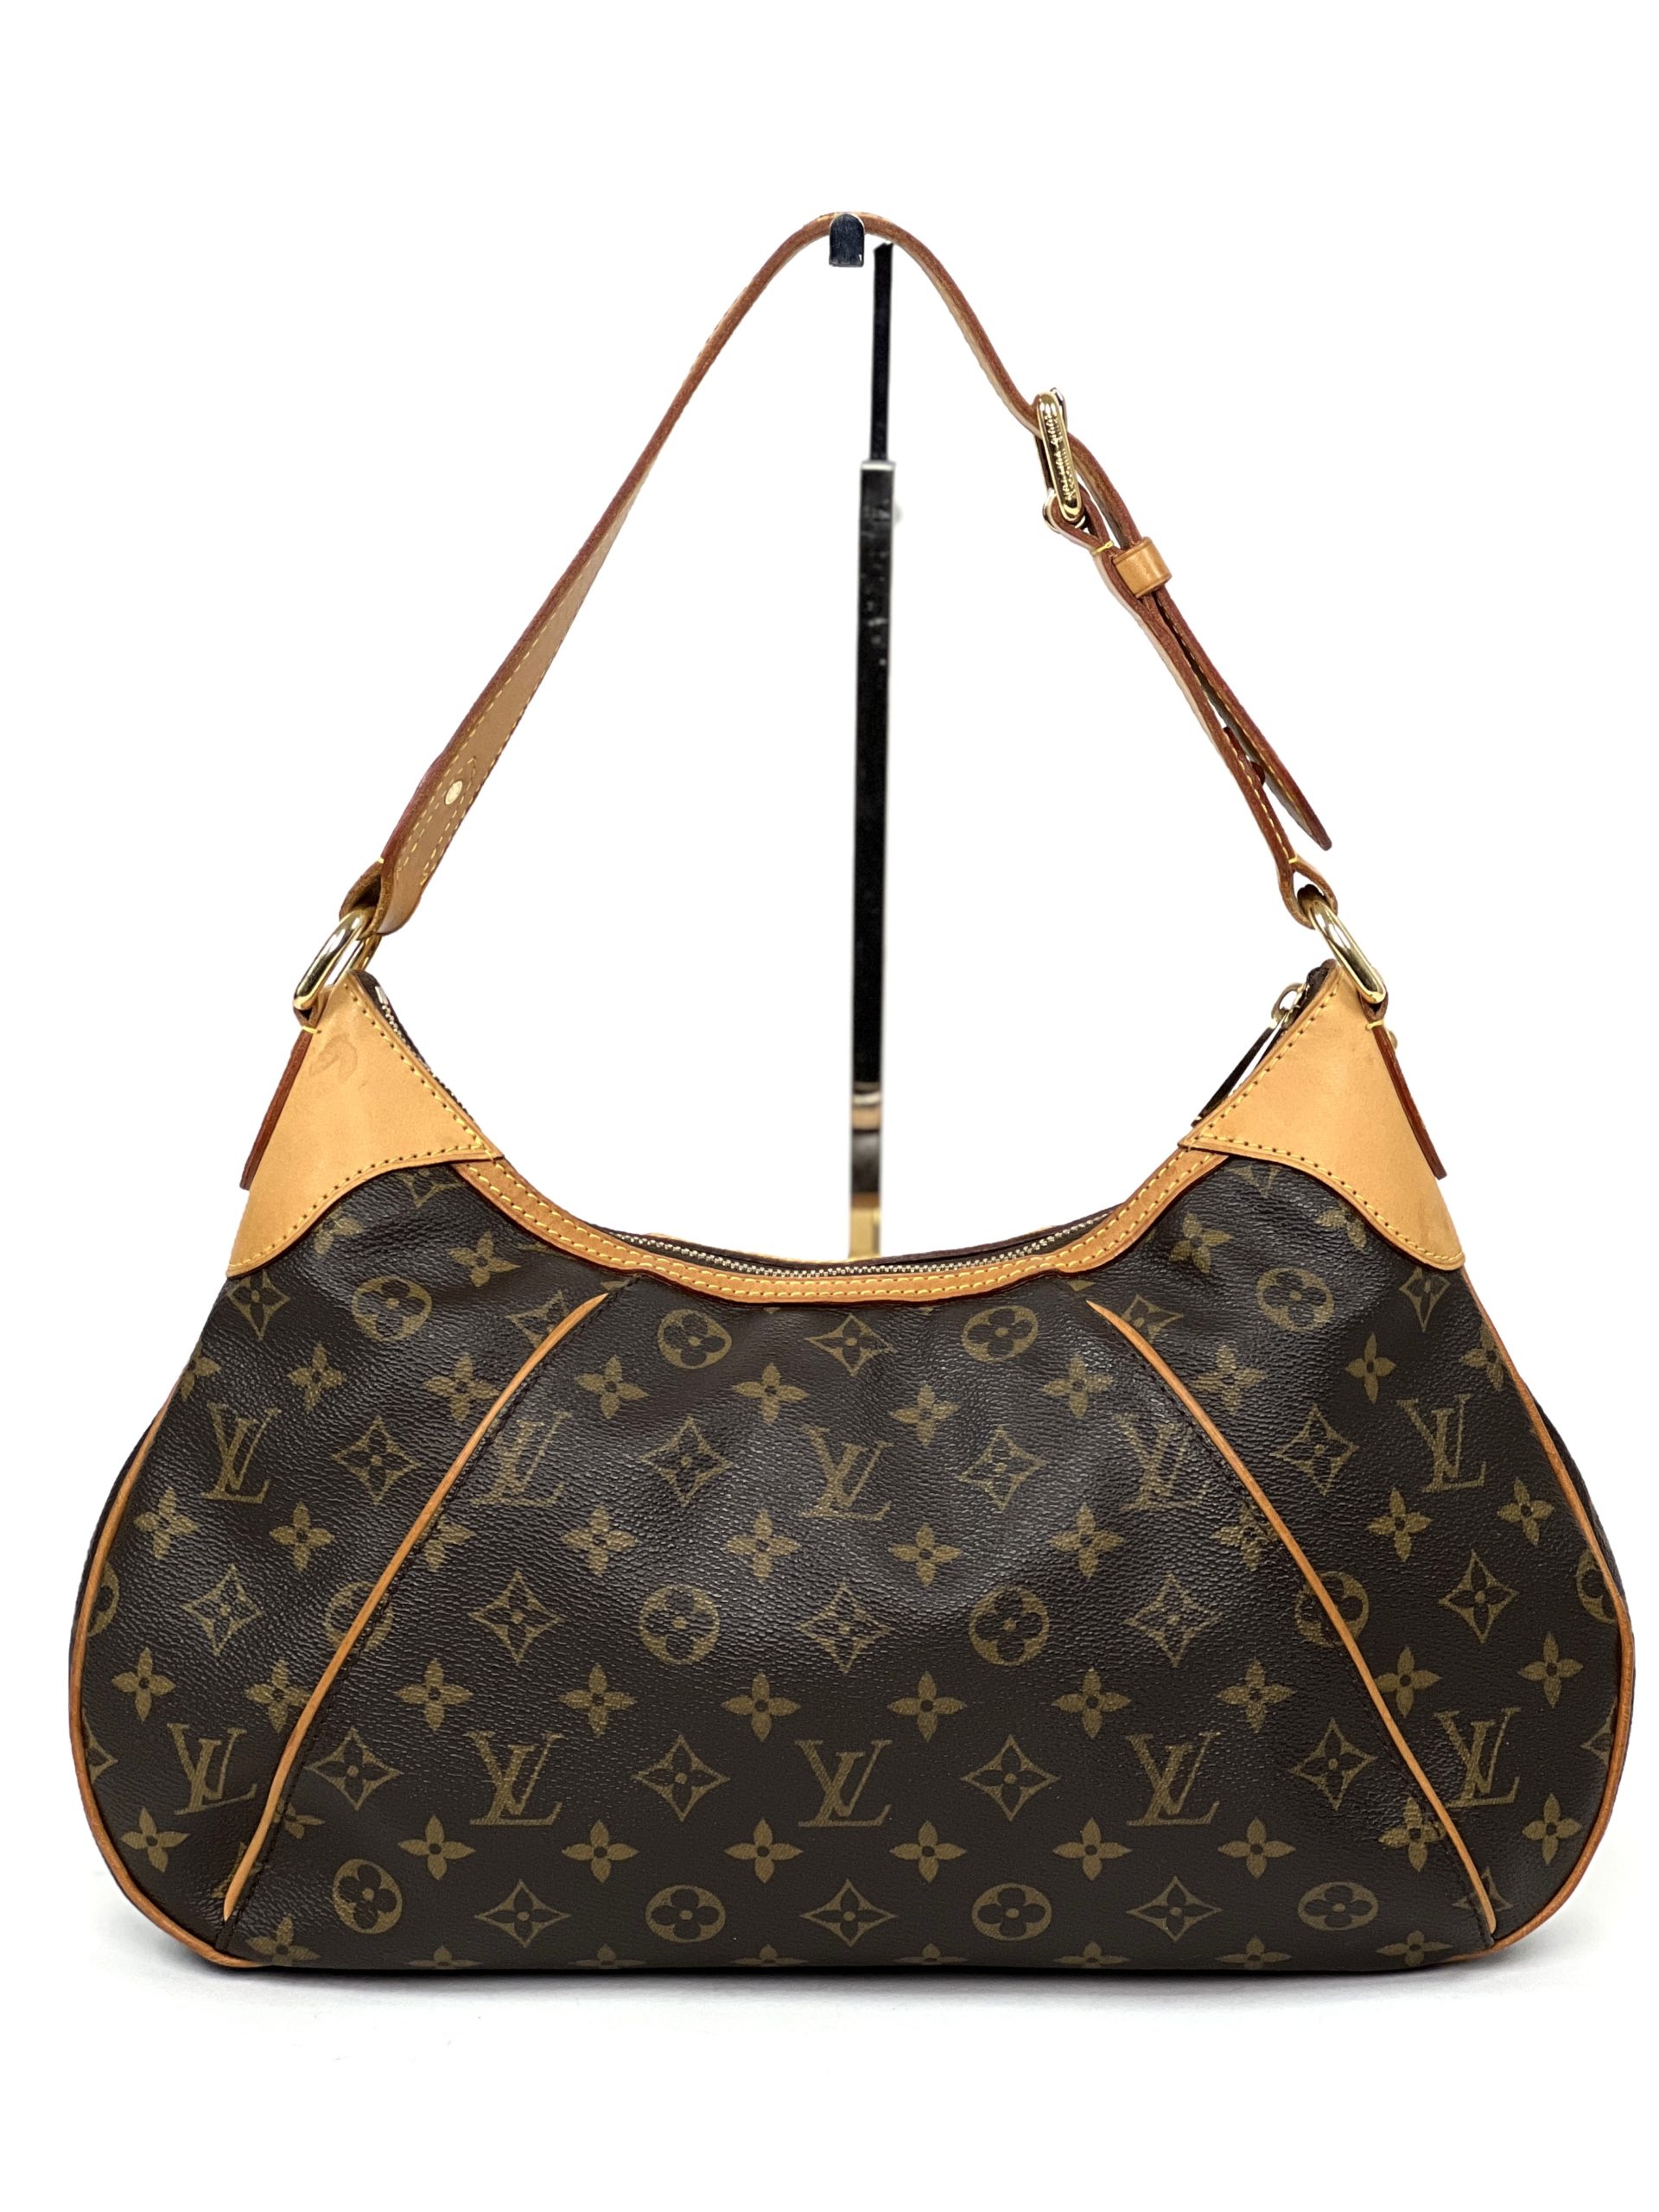 Authentic Louis Vuitton Thames PM handbag shoulder bag